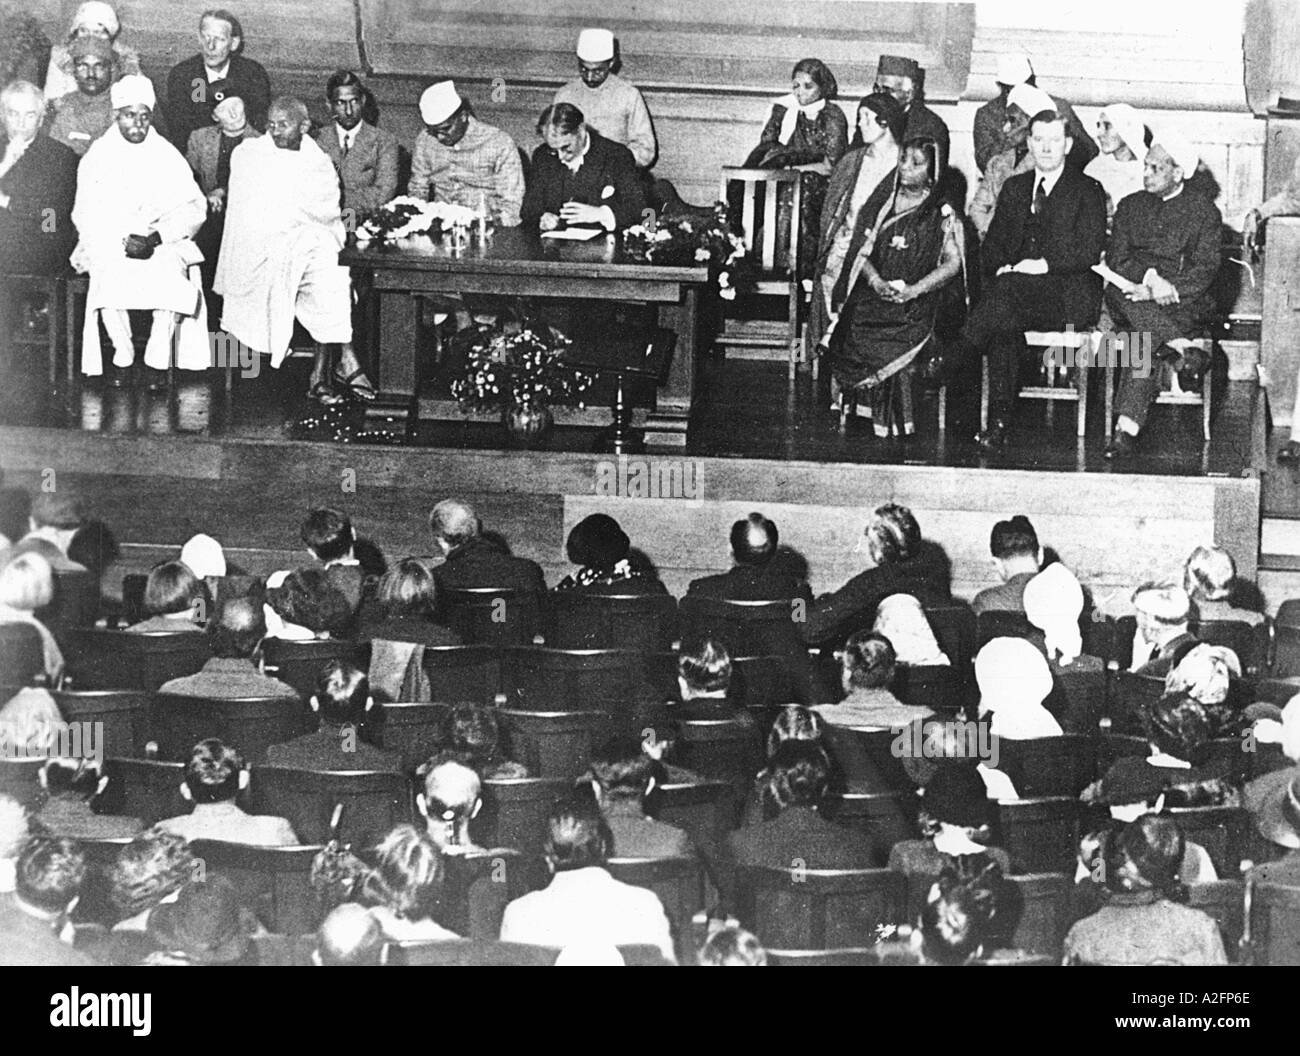 Réception pour Mahatma Gandhi à la Friends Meeting House Euston Road Londres Angleterre Royaume-Uni Royaume-Uni 12 septembre 1931 1930 Banque D'Images